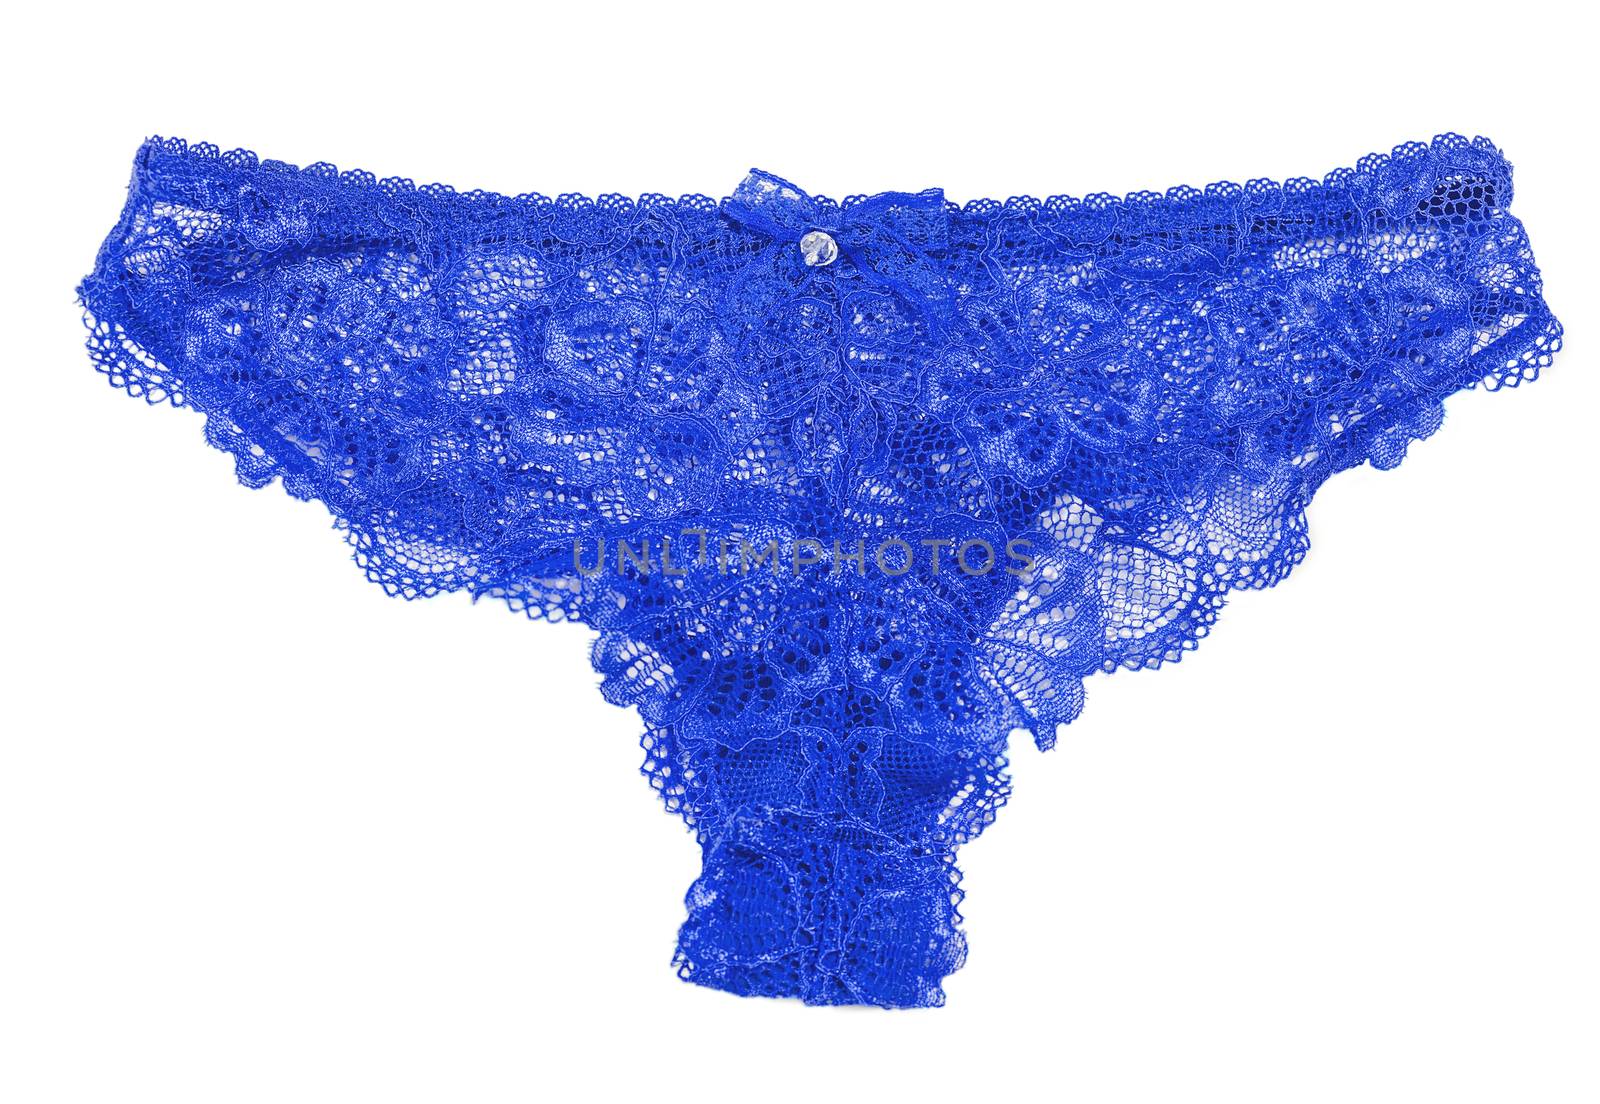 Elegant blue lace panties isolated on white